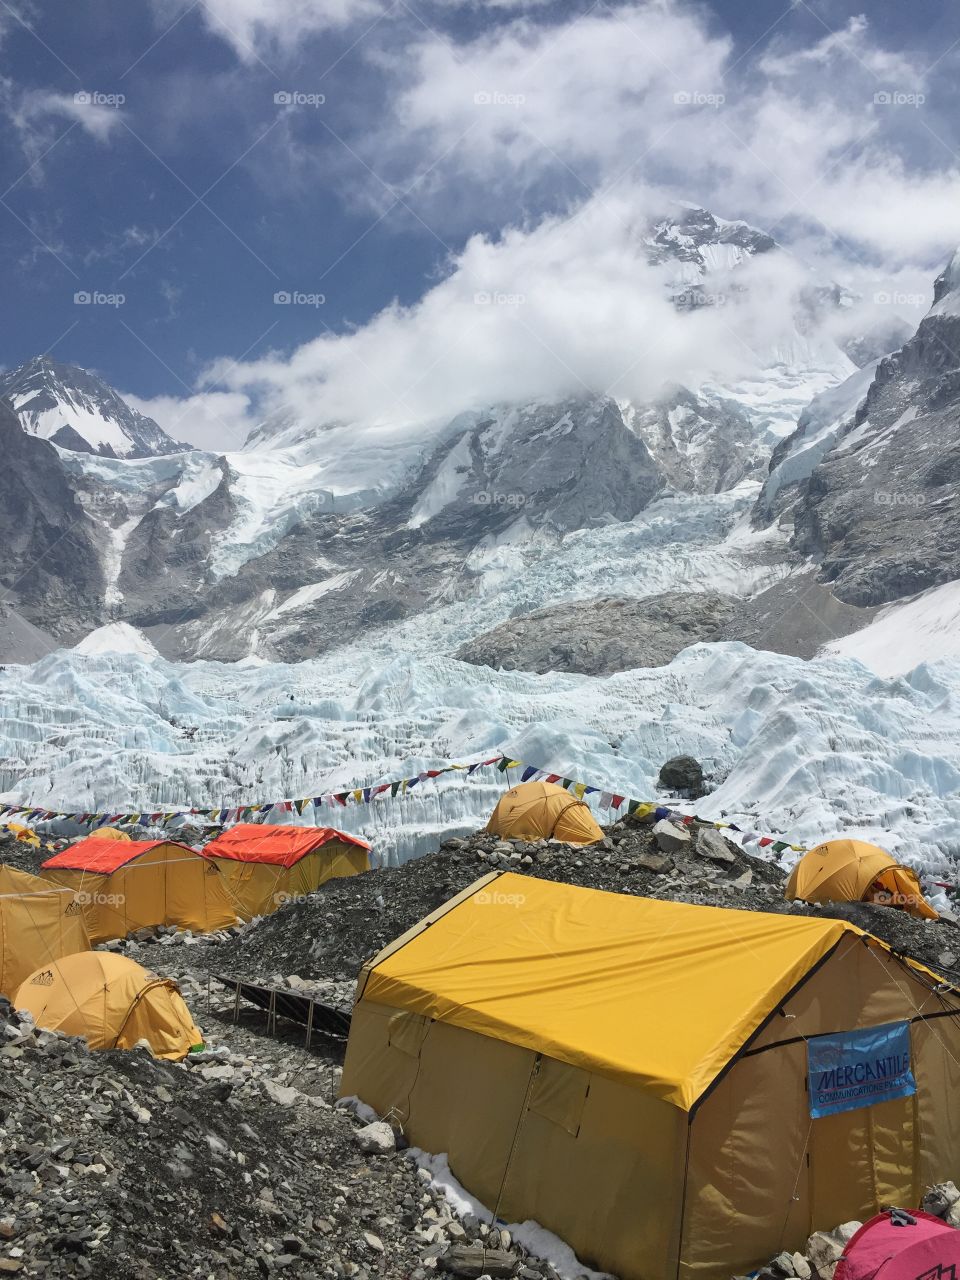 Everest Base Camp in April.